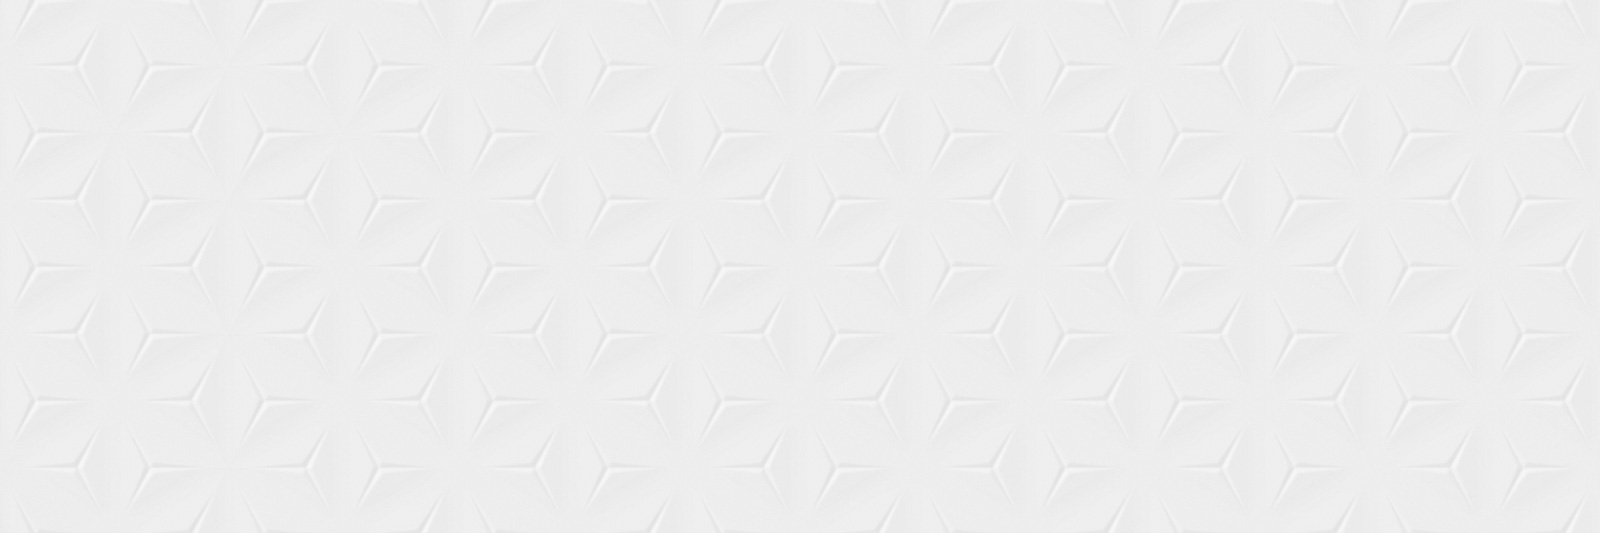 Керамическая плитка TWU11RUB000 плитка облицовочная рельефная Rubi 200*600*8 (15 шт в уп/54 м в пал) / коллекция Rubi 200*600 / производитель Alma Ceramica / страна Россия